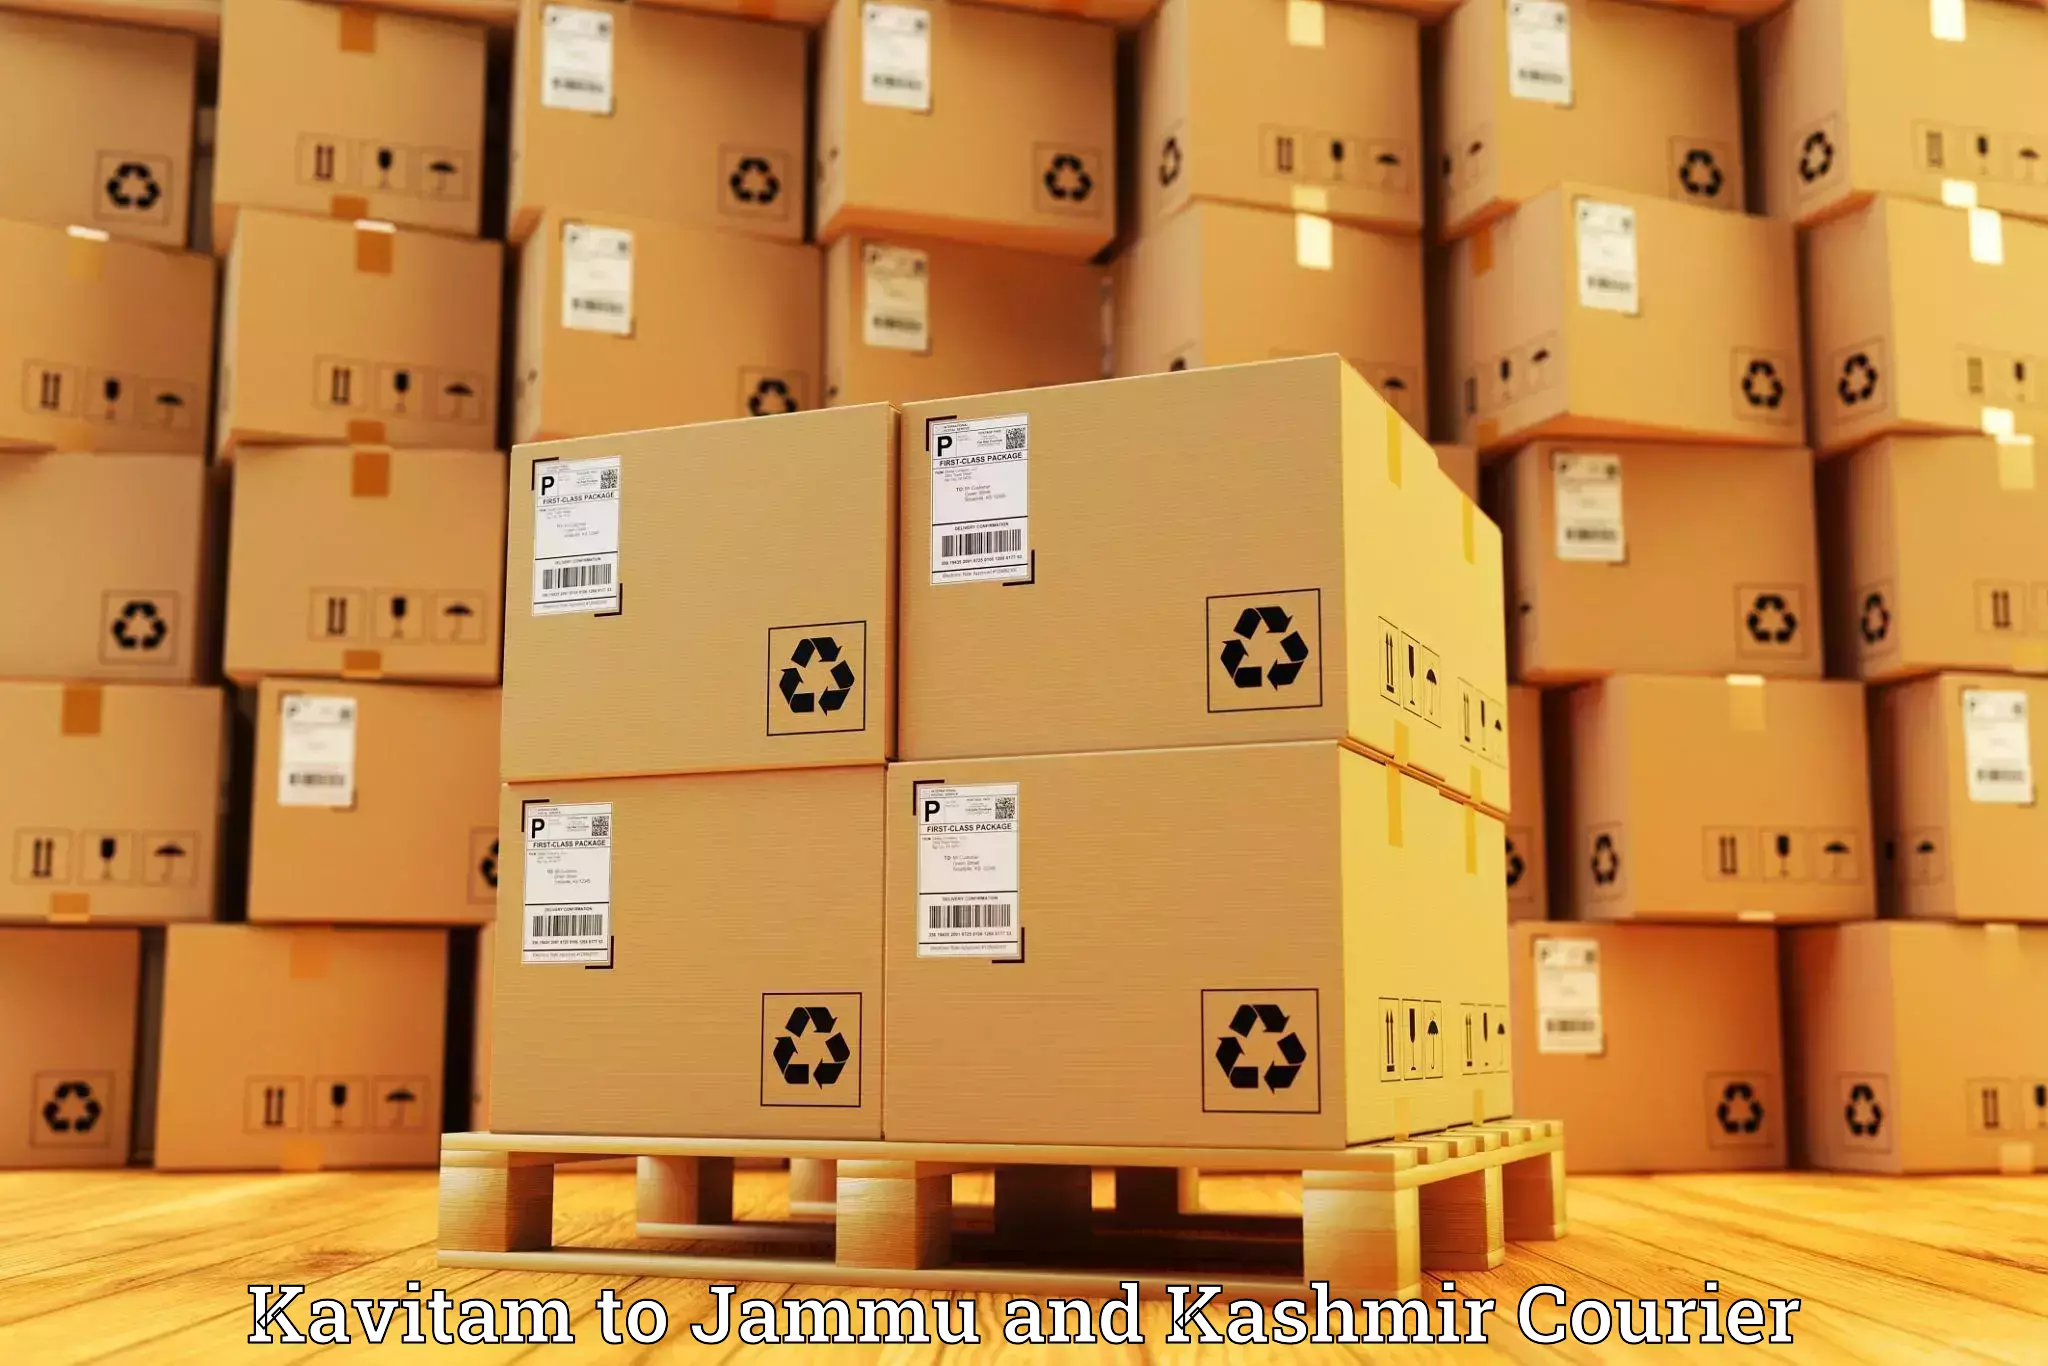 Customer-centric shipping Kavitam to Kishtwar